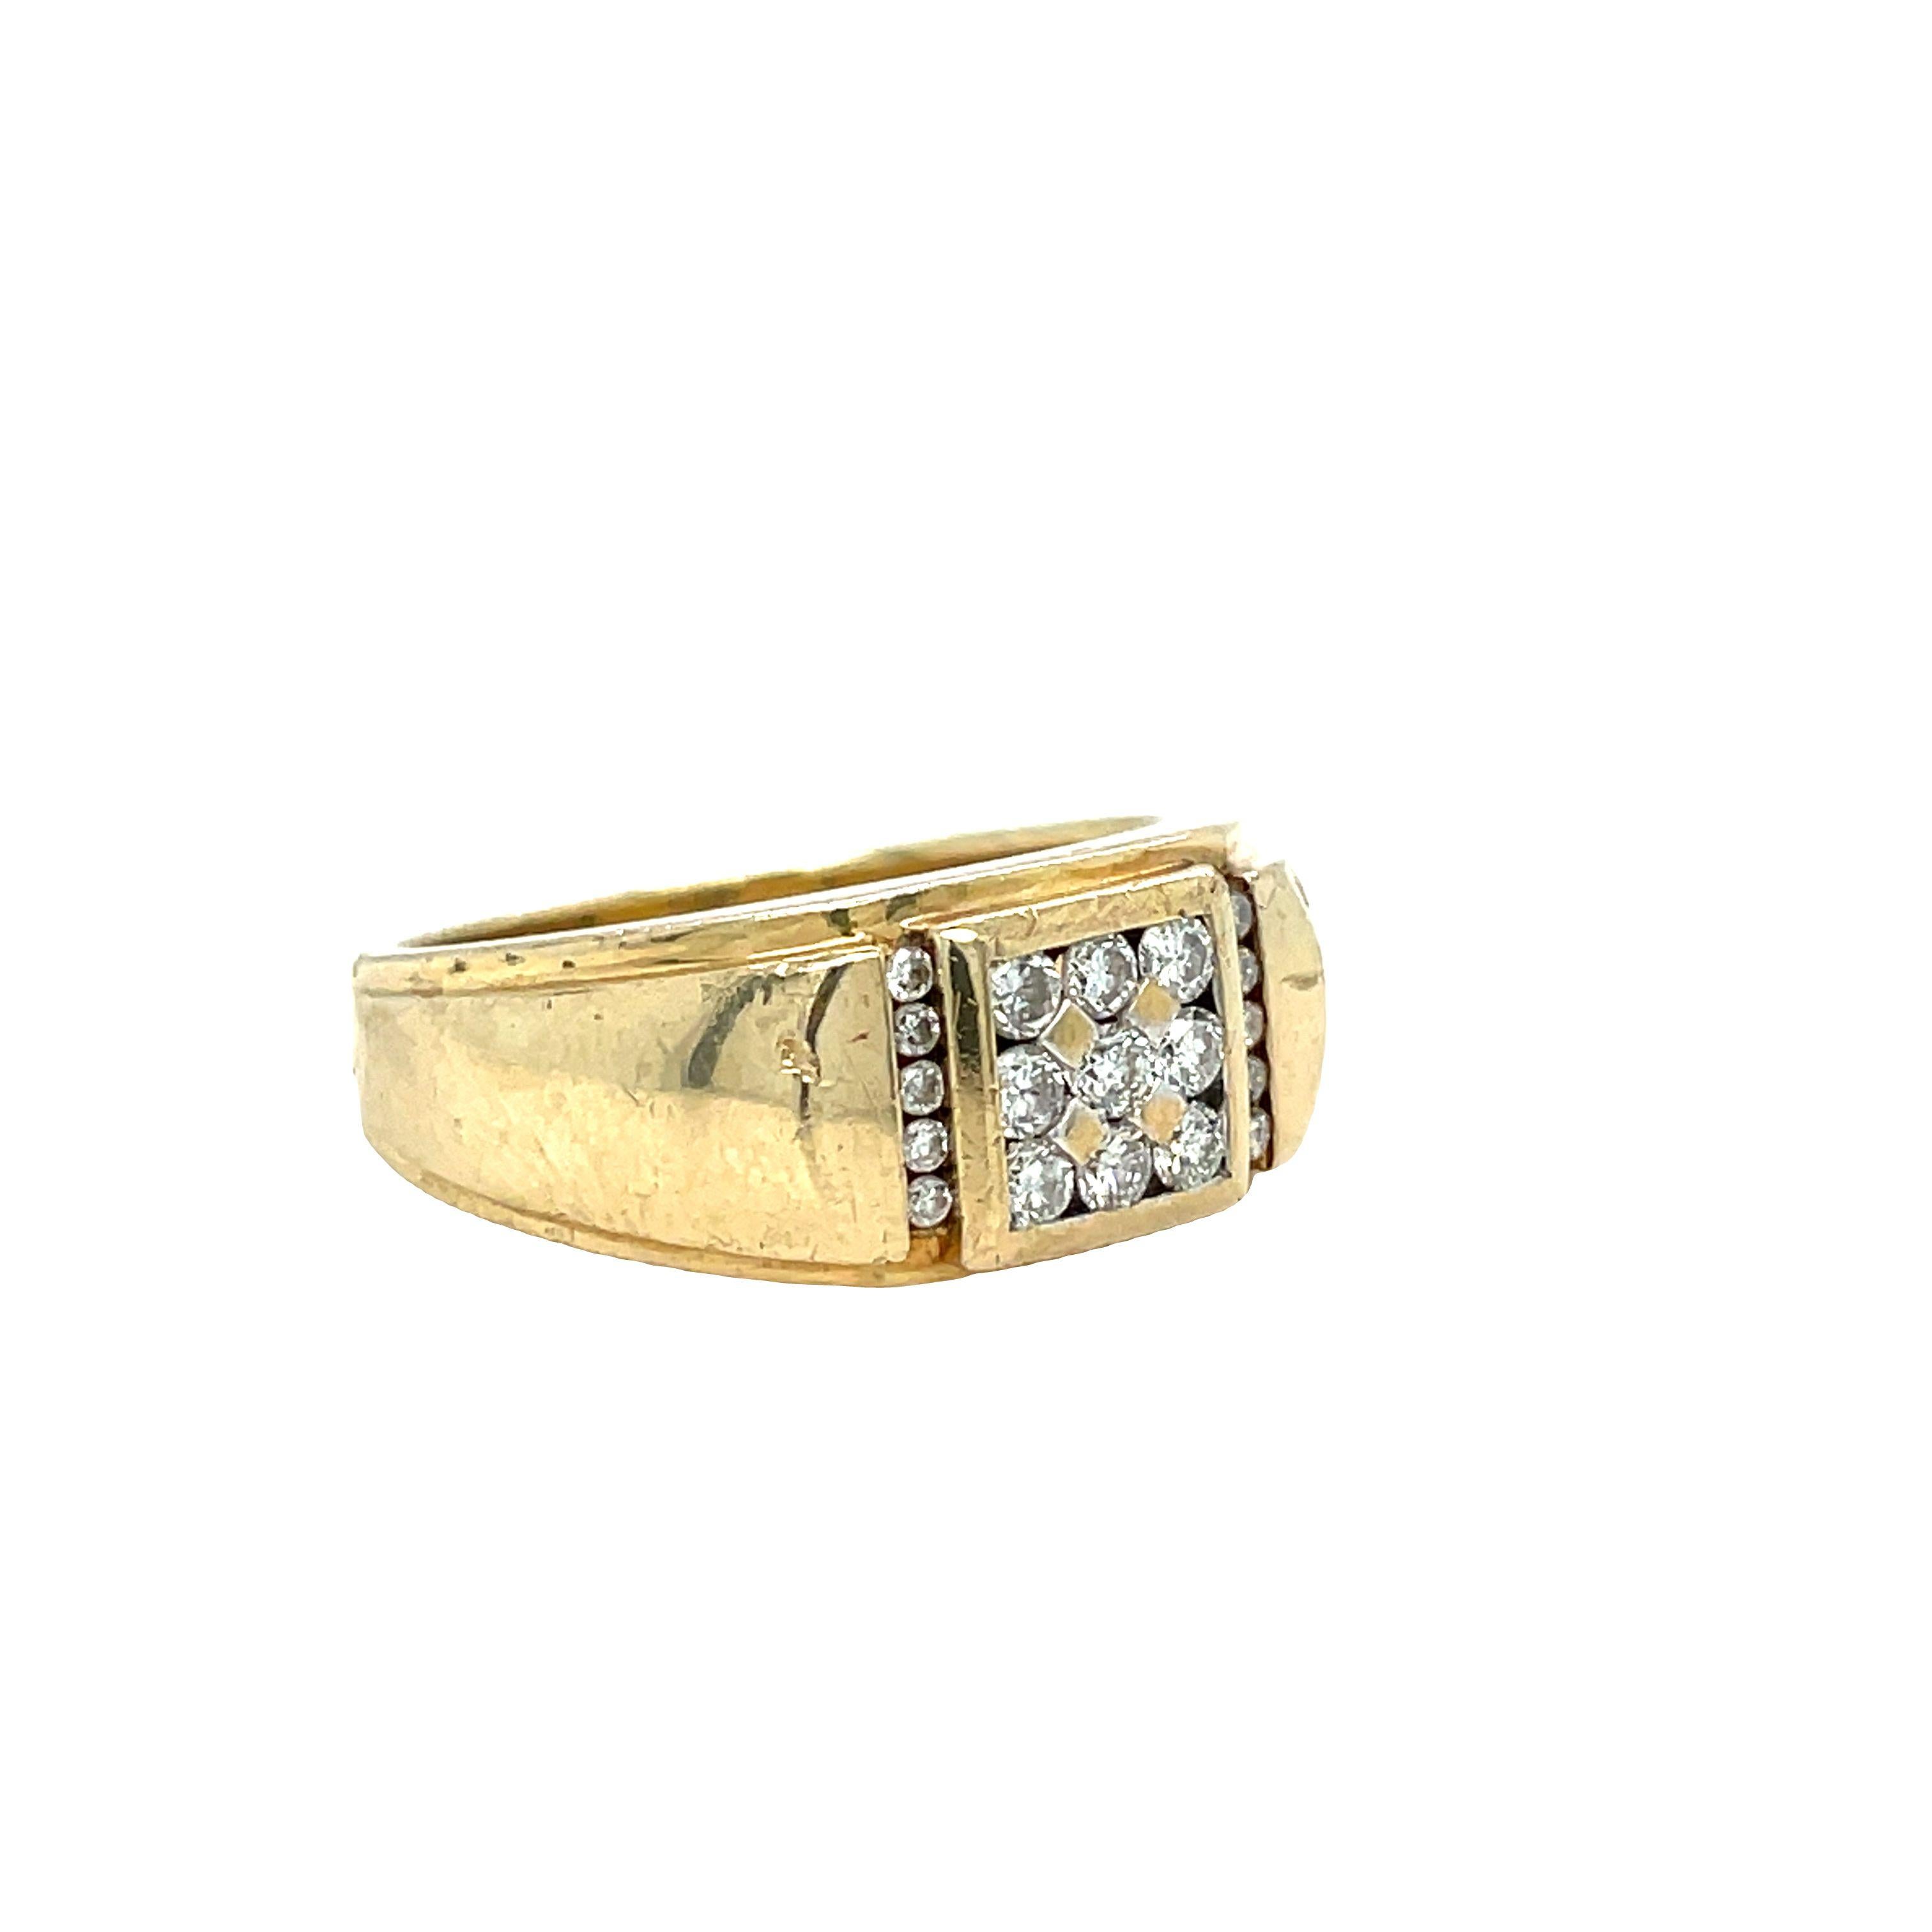 Cette bague Vintage pour homme en or jaune 14K est façonnée avec élégance, elle met en valeur dix-neuf diamants ronds de taille brillant pesant environ 0,55 carat au total. Le centre de la bague est orné de neuf éblouissants diamants ronds de taille